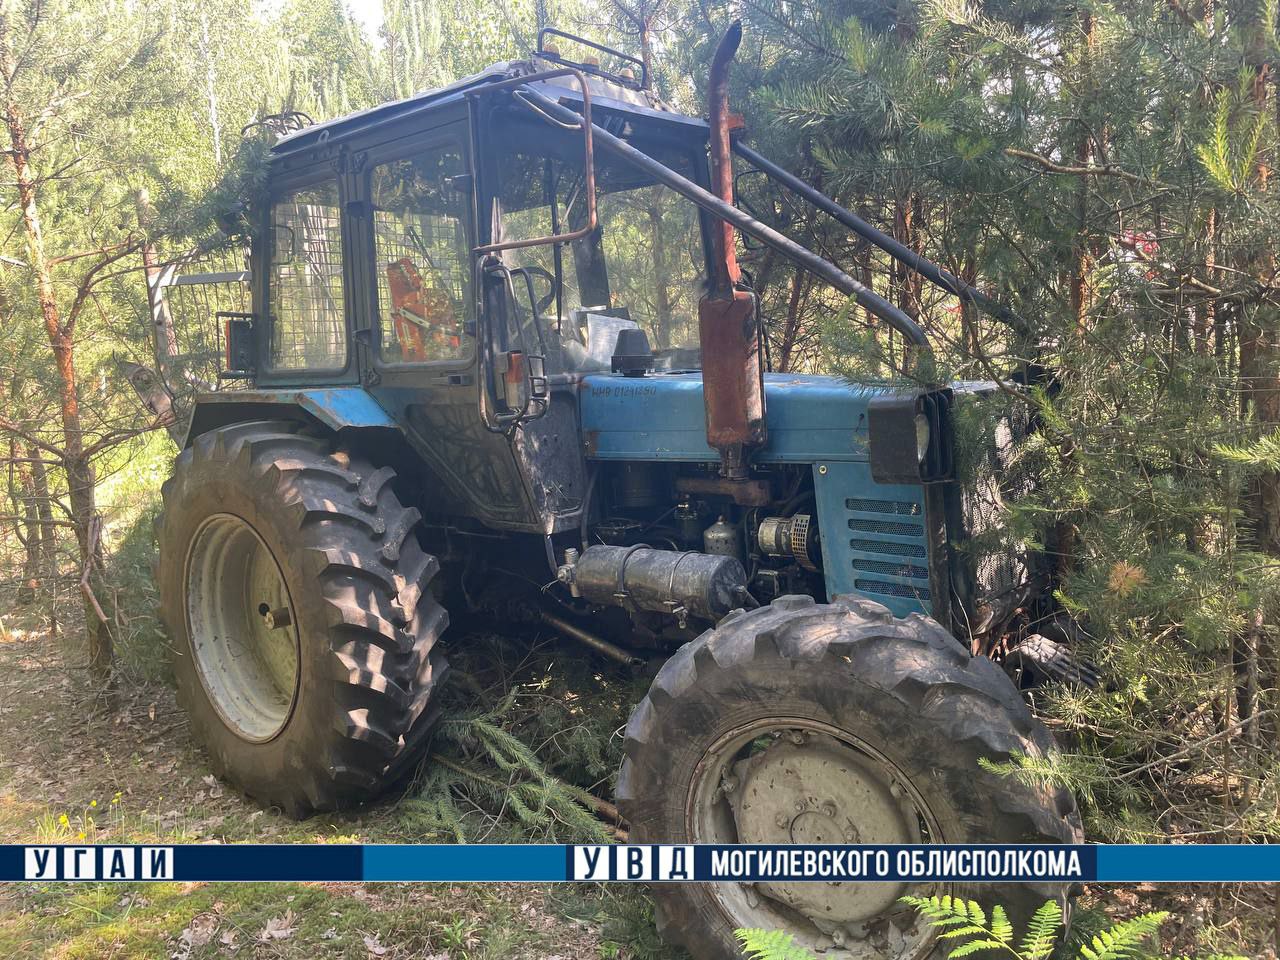 Маршрутка и трактор столкнулись в Бобруйском районе. Пострадали 9 человек